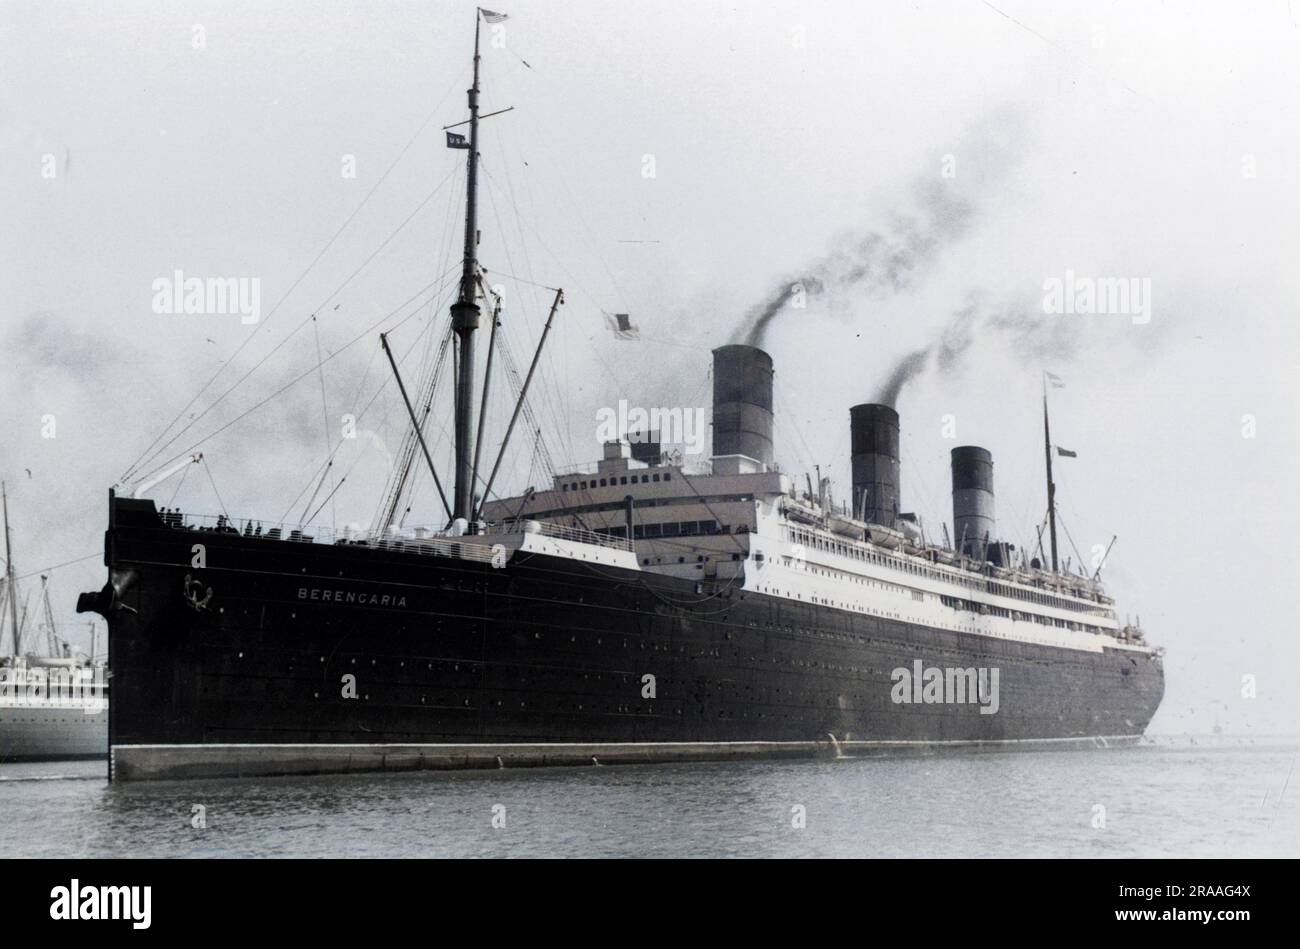 Le R.M.S. Berengaria de la ligne Cunard (lancée à l'origine sous le nom de S.S. Imperator pour la ligne Hambourg-Amérique en 1912) entrant dans le port en 1930s. Il a été mis au rebut en 1938. Date: 1930s Banque D'Images